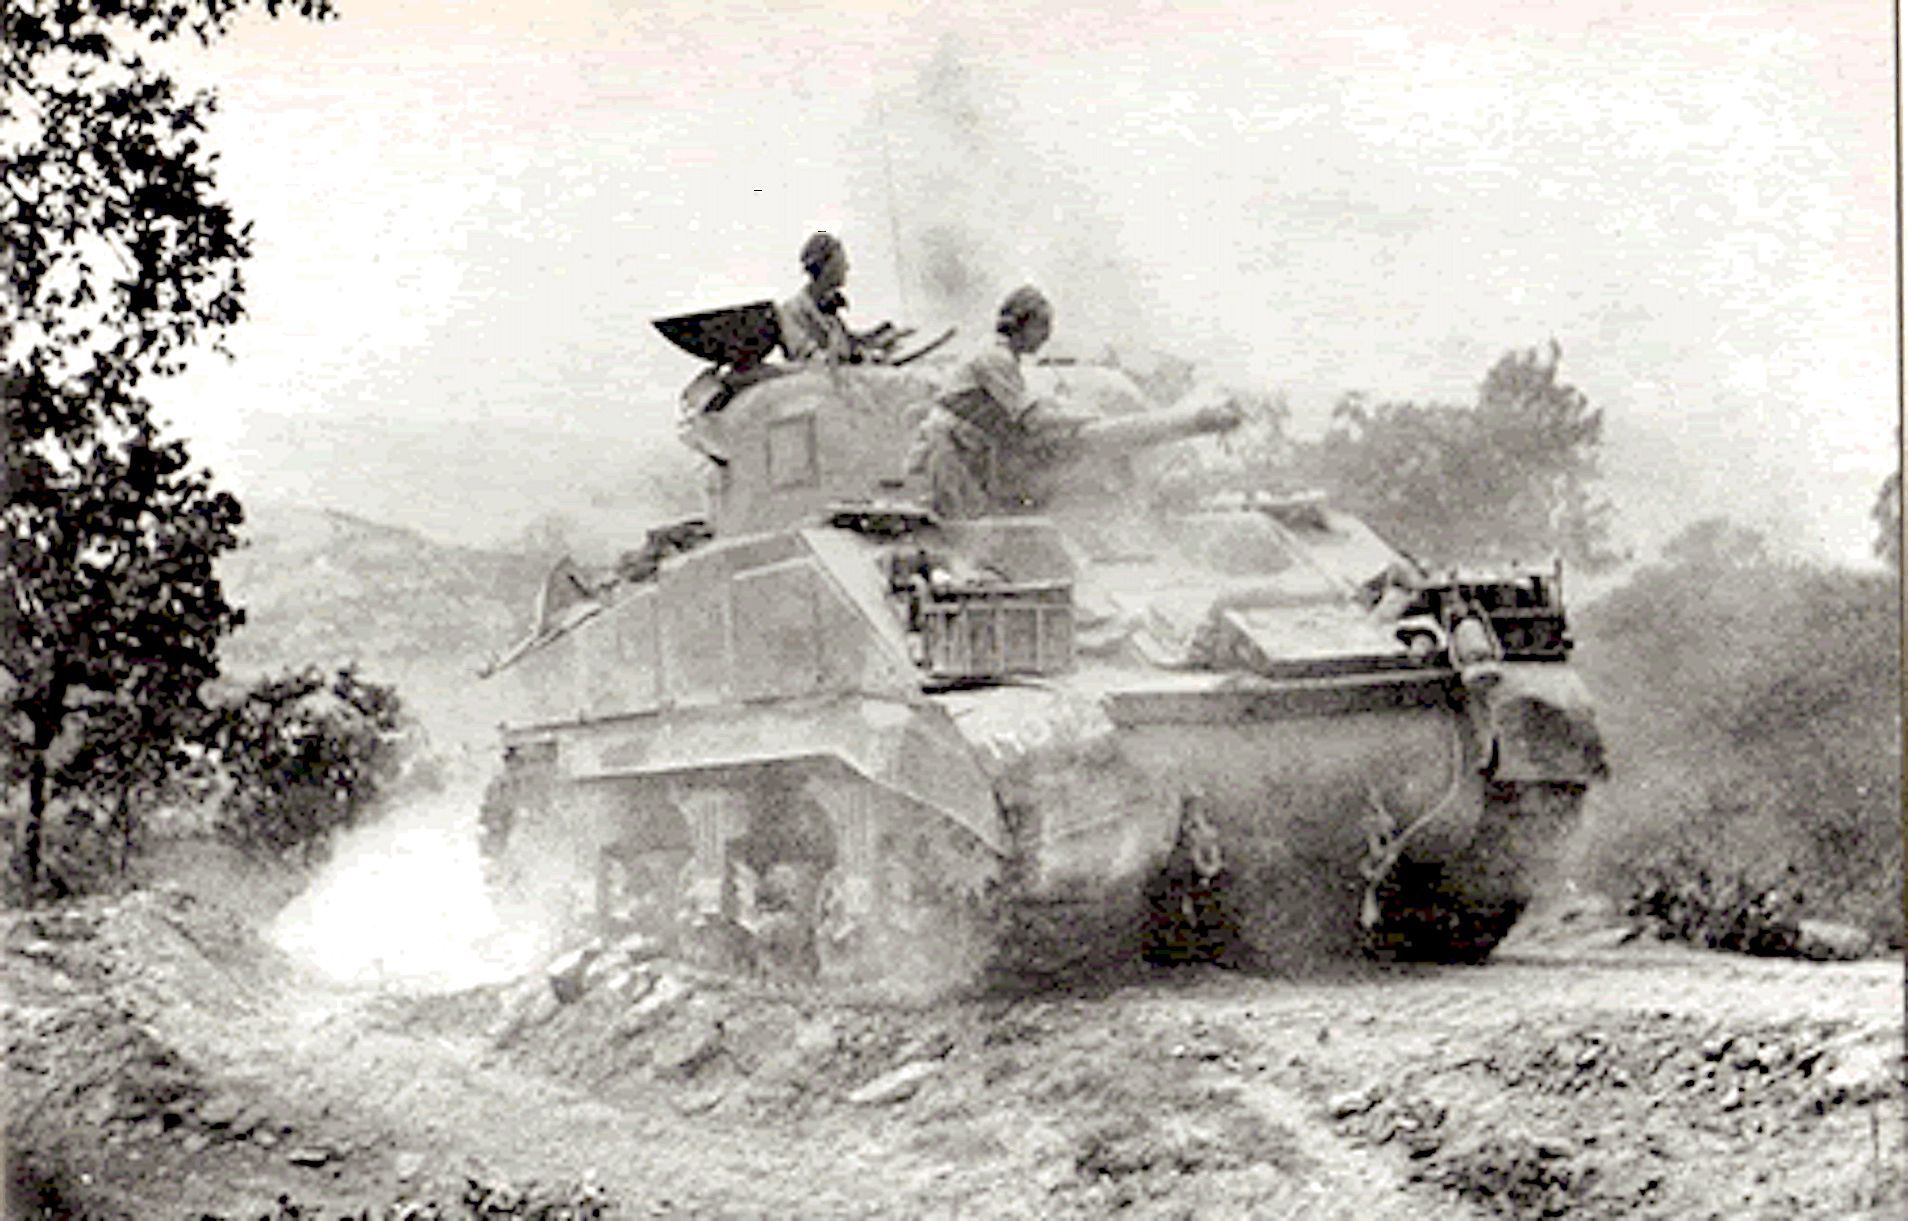 Sherman Tanks in Italy